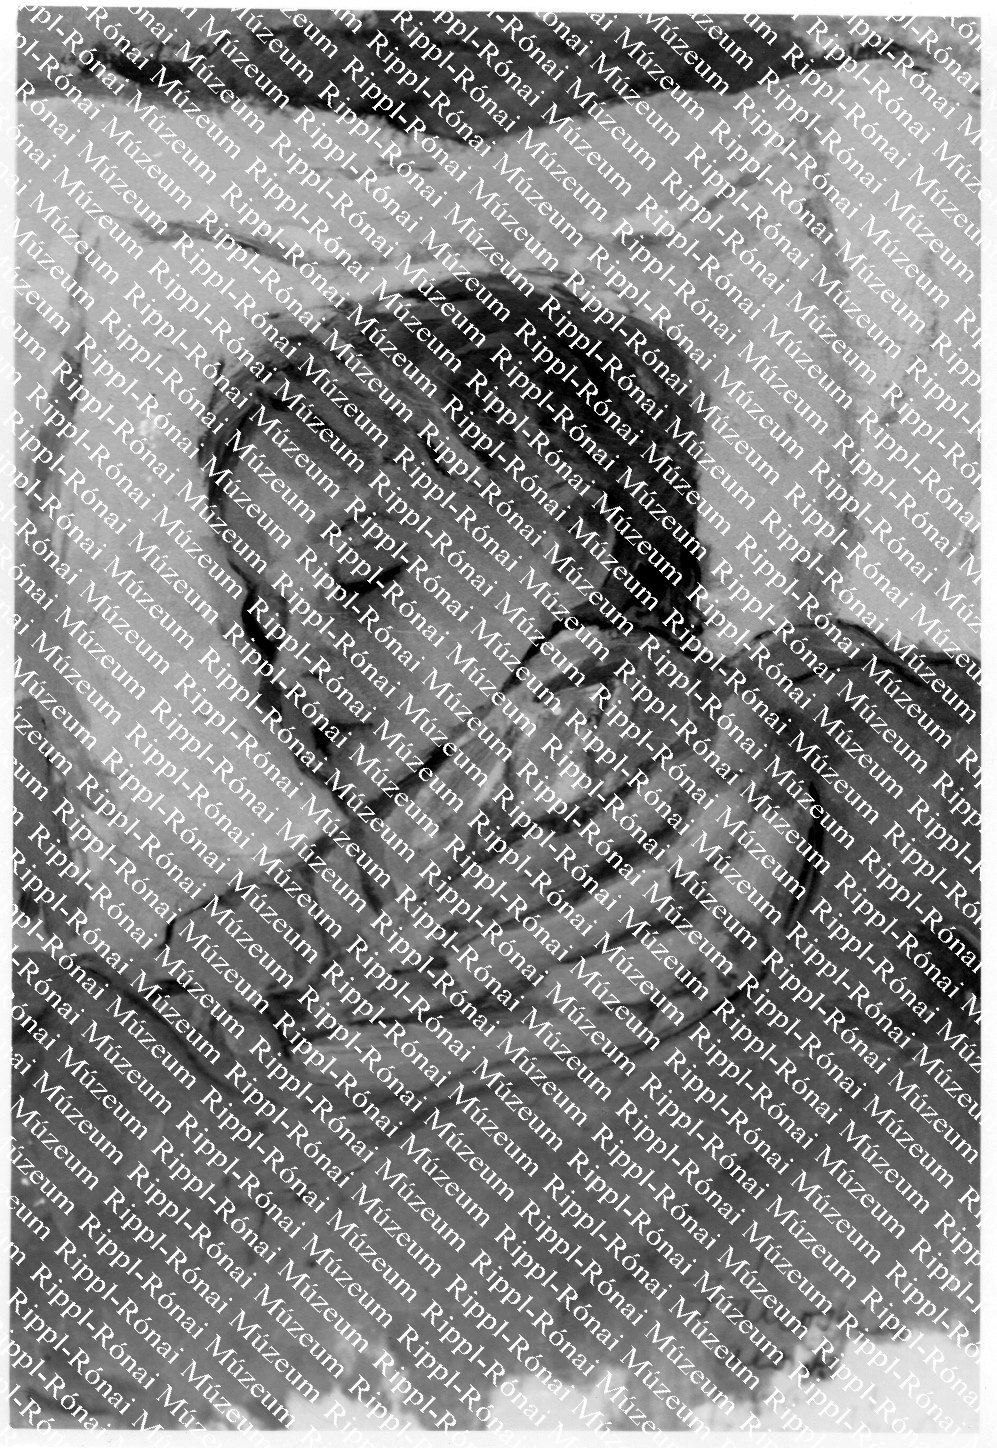 Szilva János: János alszik (Rippl-Rónai Múzeum CC BY-NC-SA)